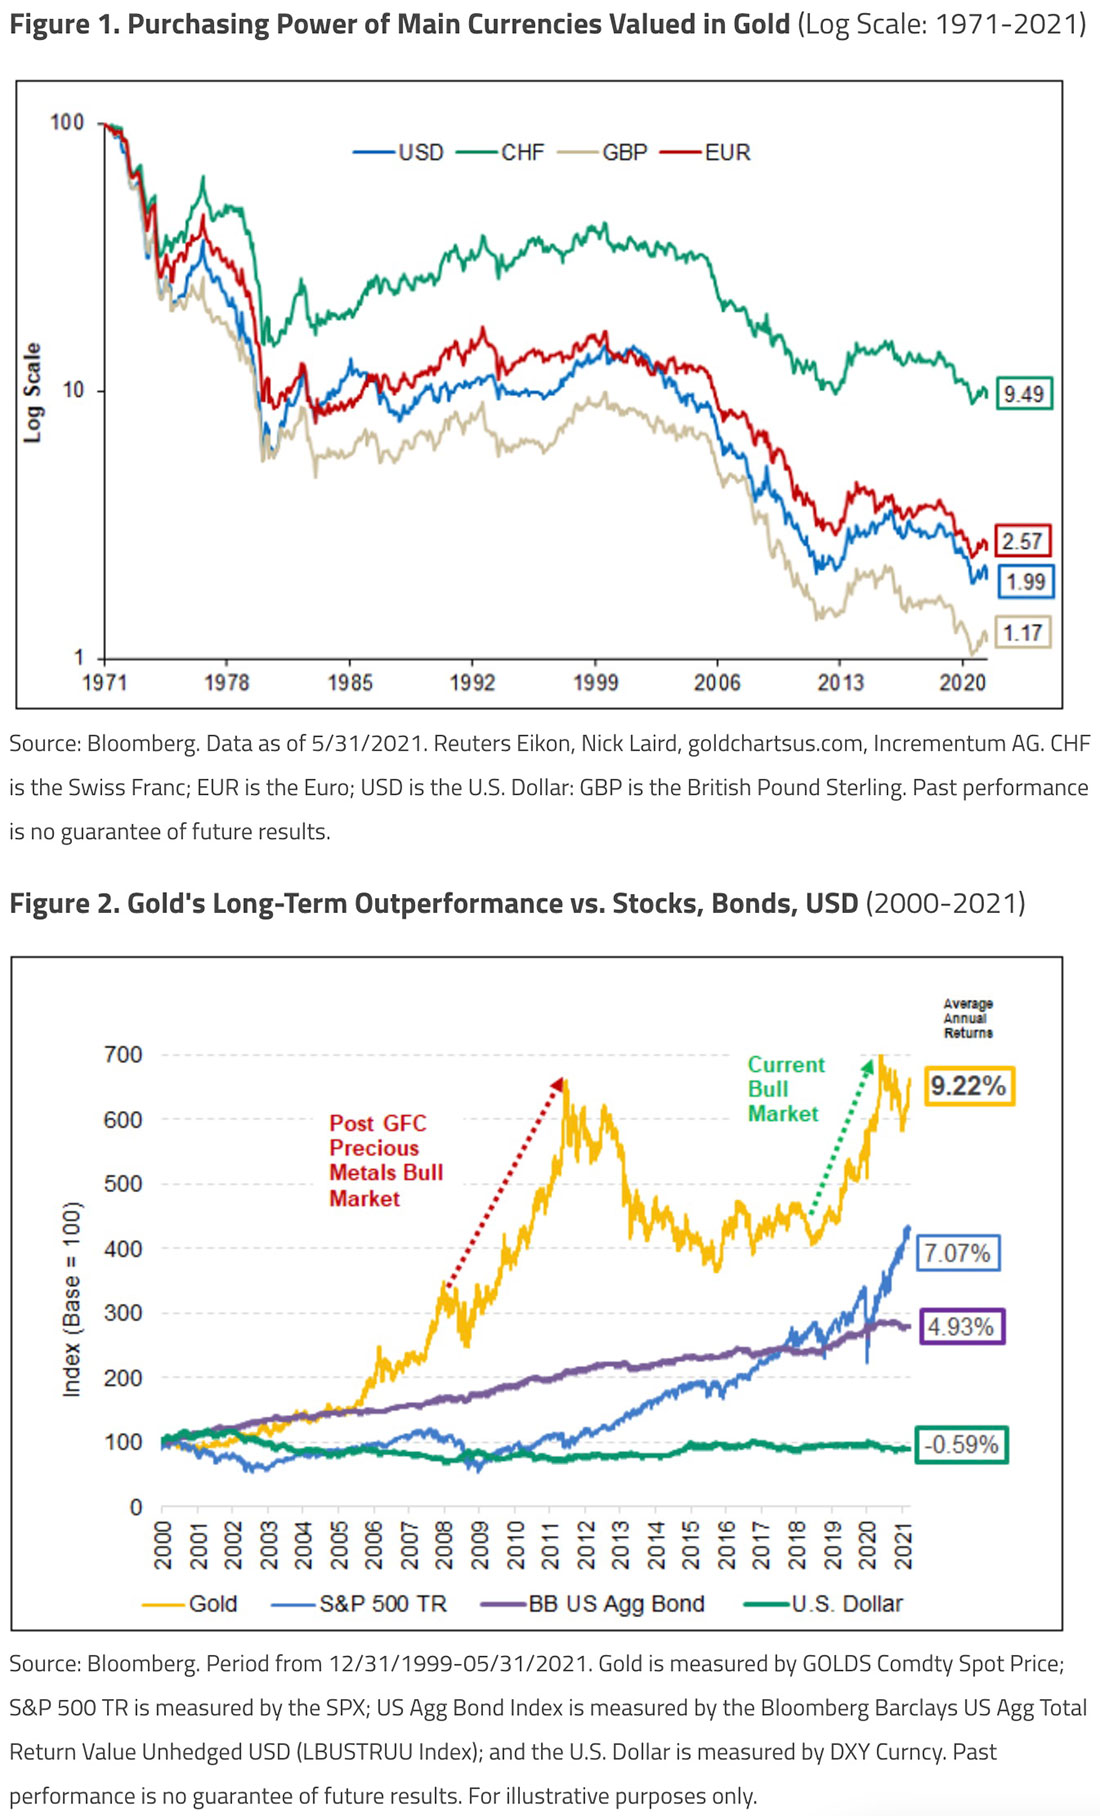 покупательная способность основных валют в золоте, показатели золота и акций, облигаций, доллара США в долгосрочной перспективе